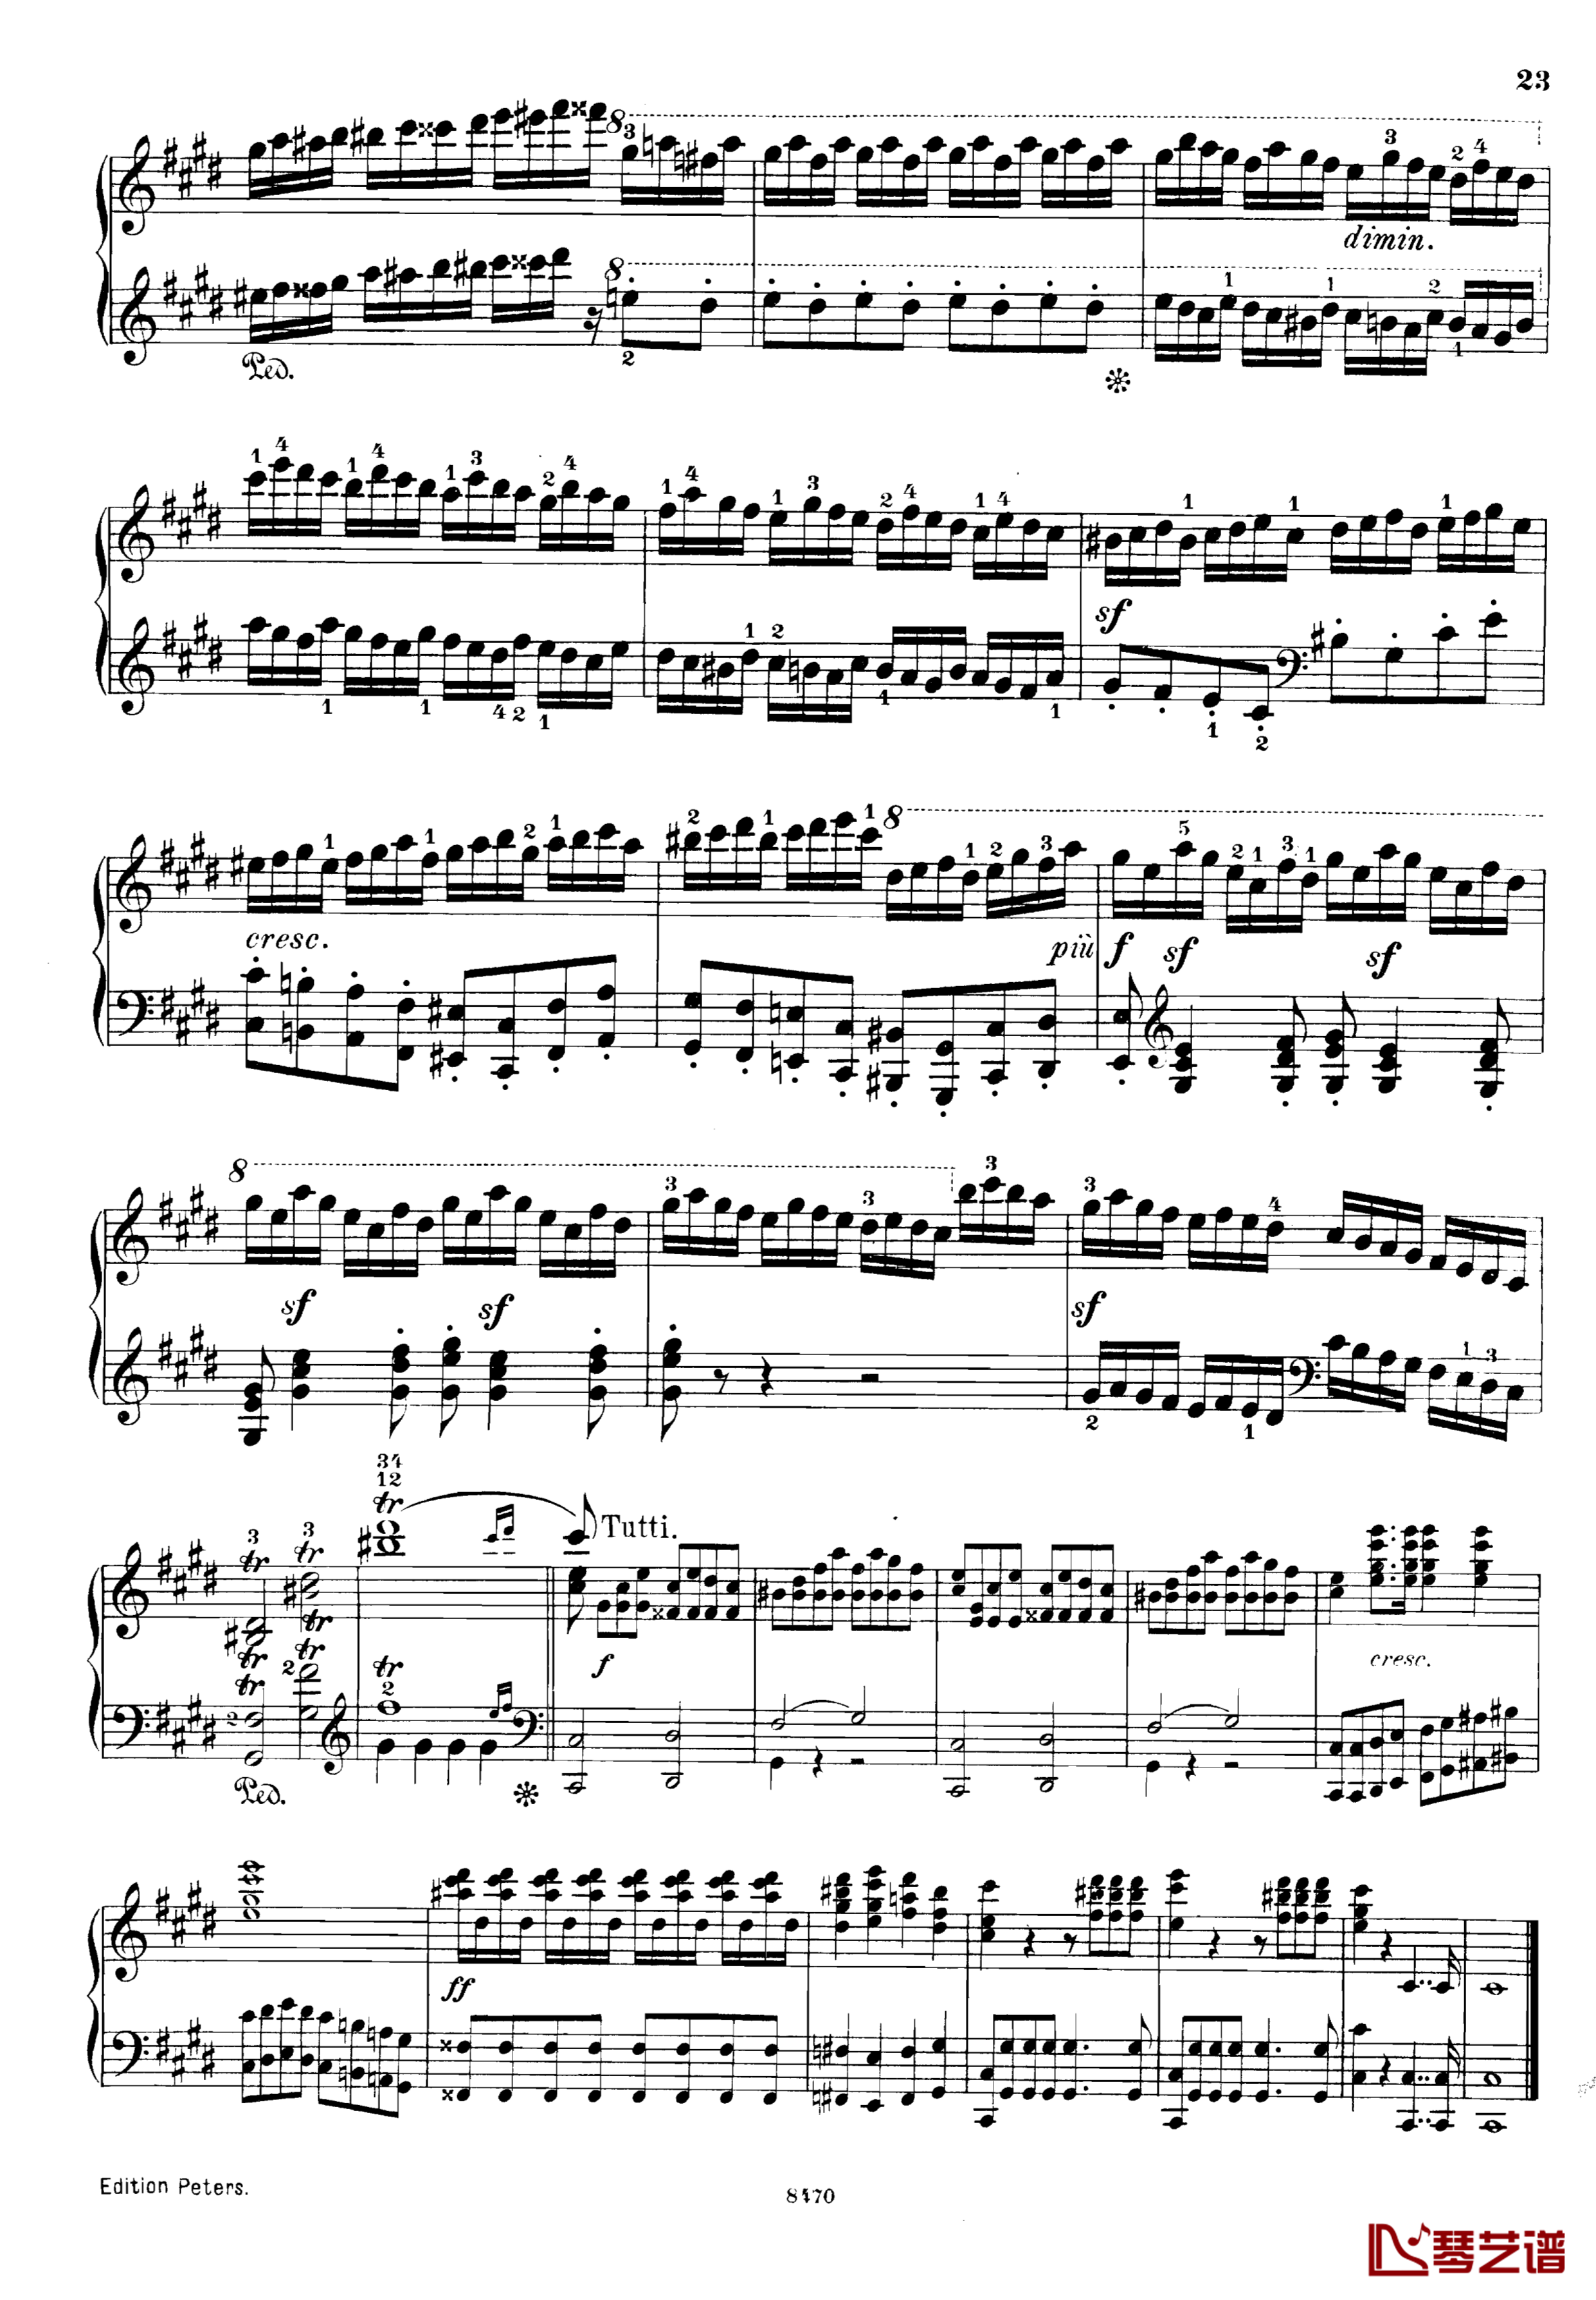 升c小调第三钢琴协奏曲Op.55钢琴谱-克里斯蒂安-里斯23